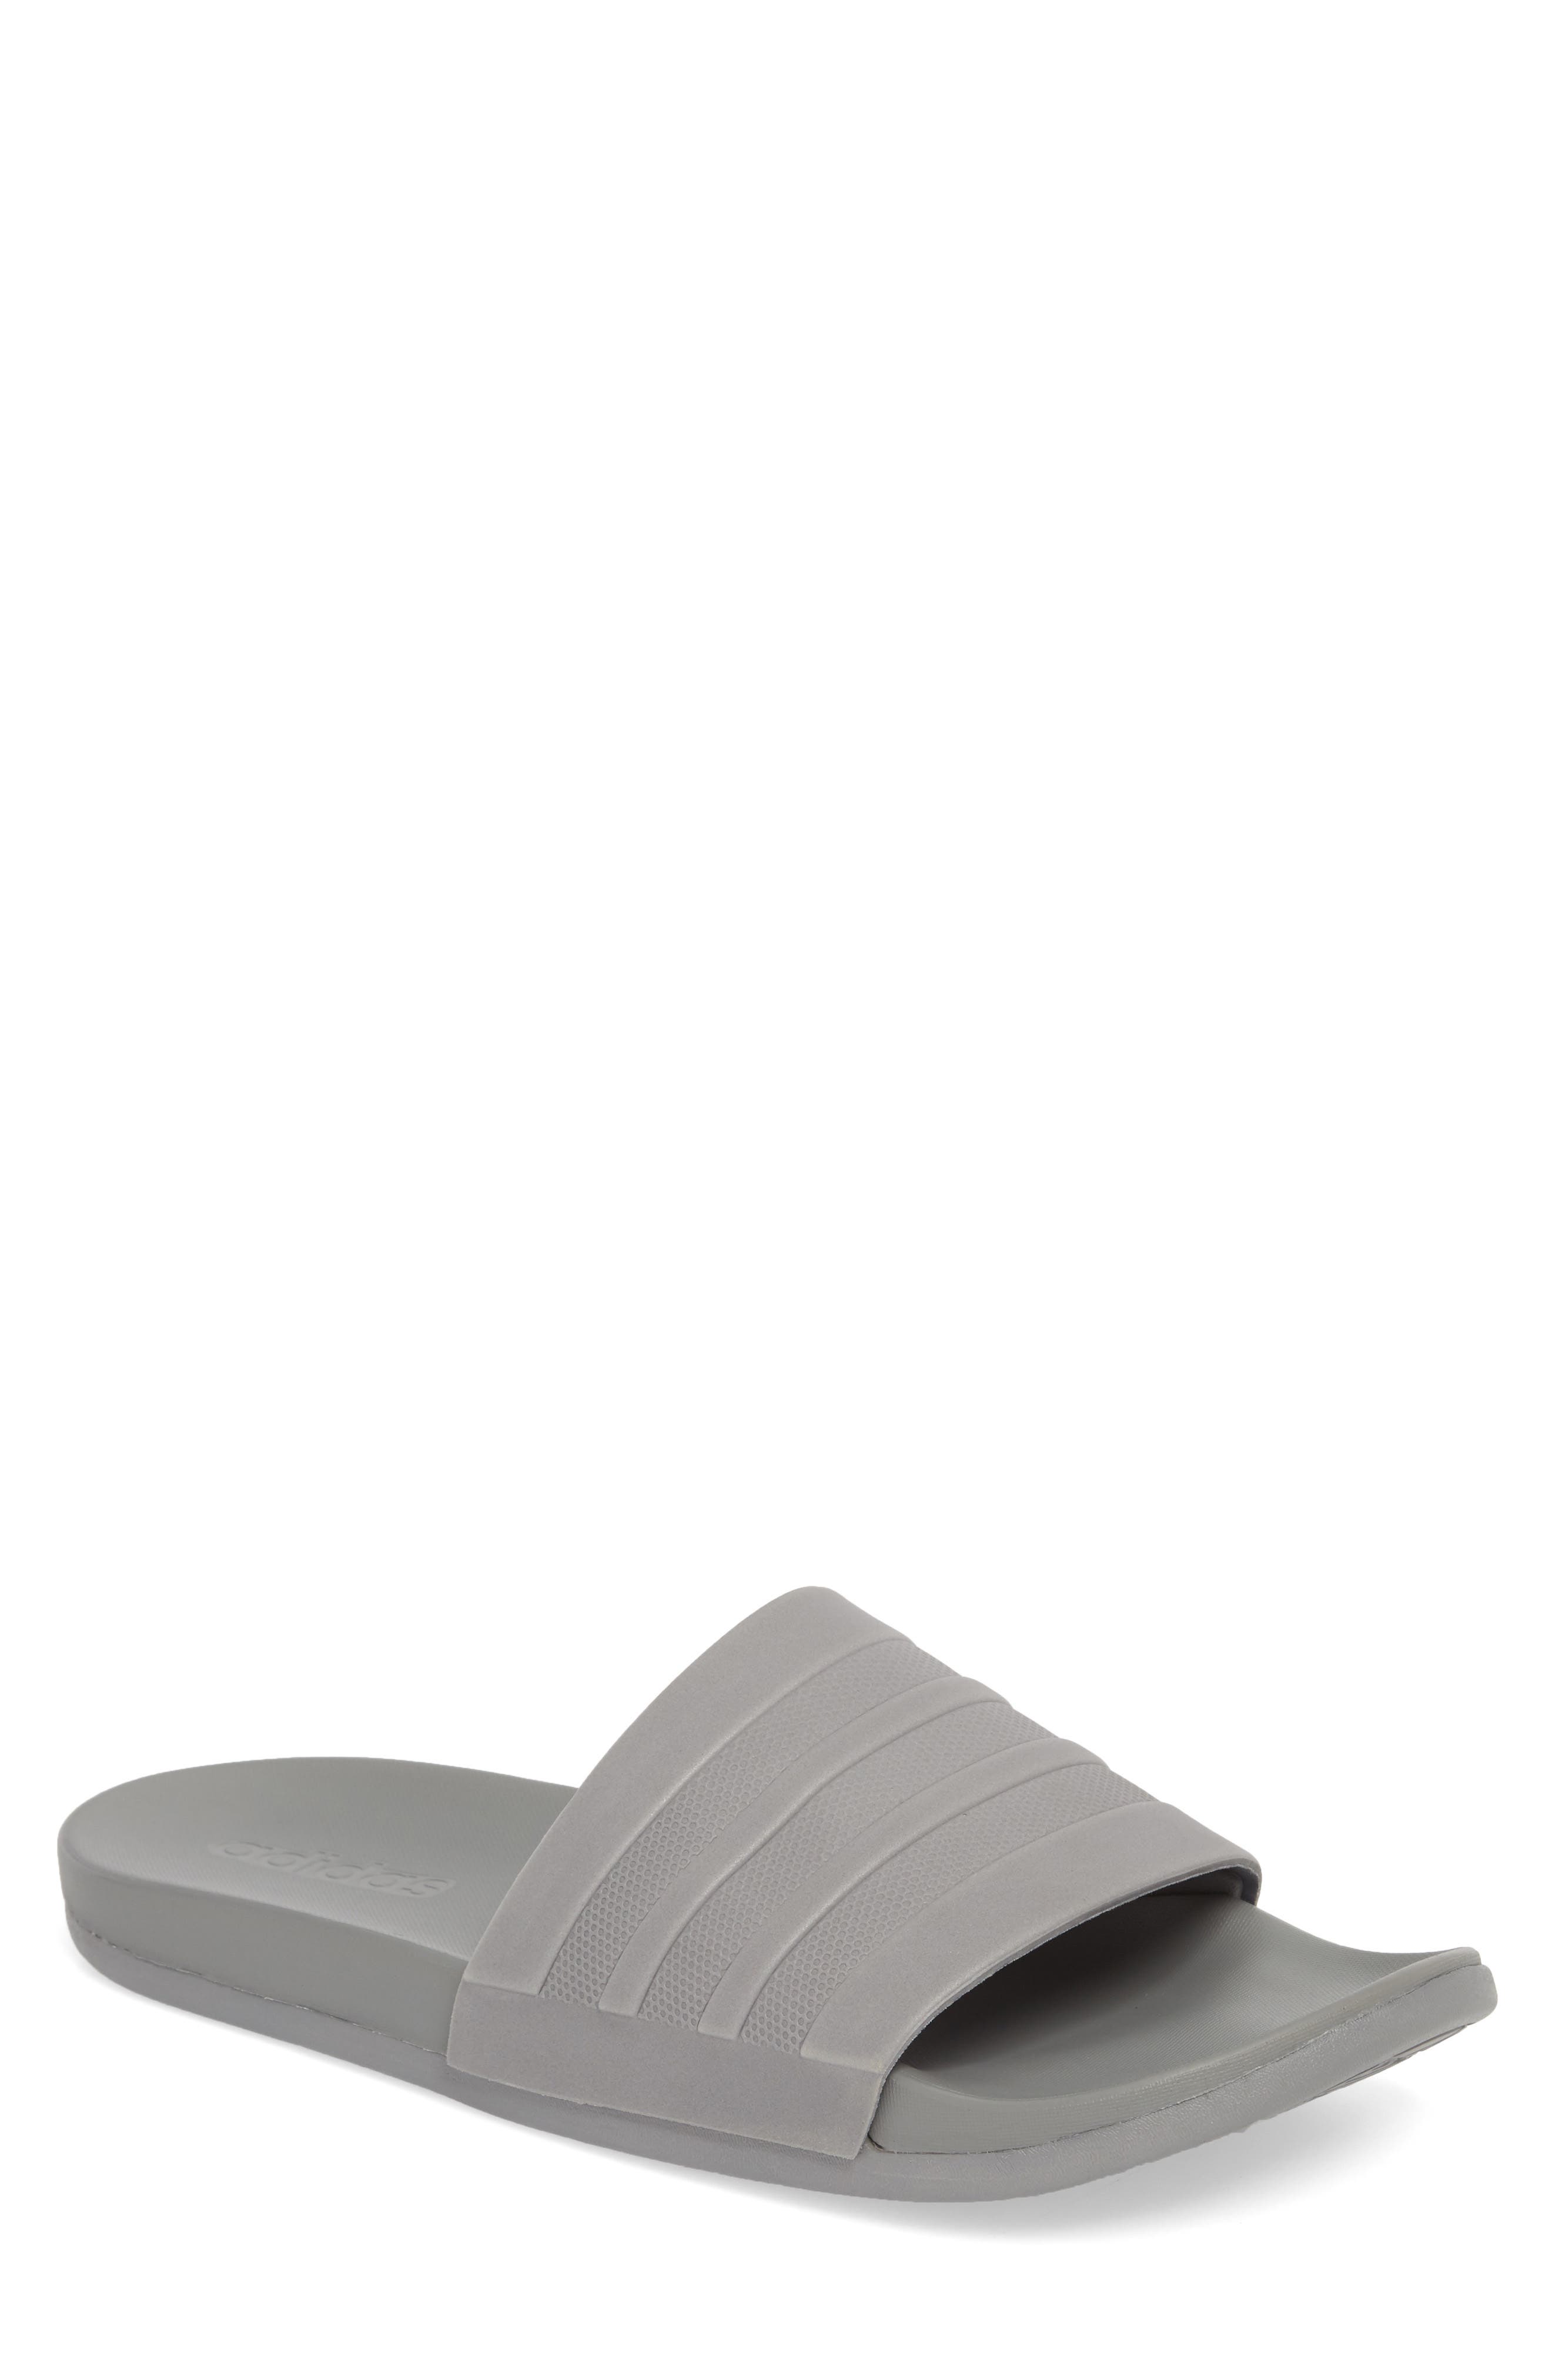 adilette cloudfoam slide sandal